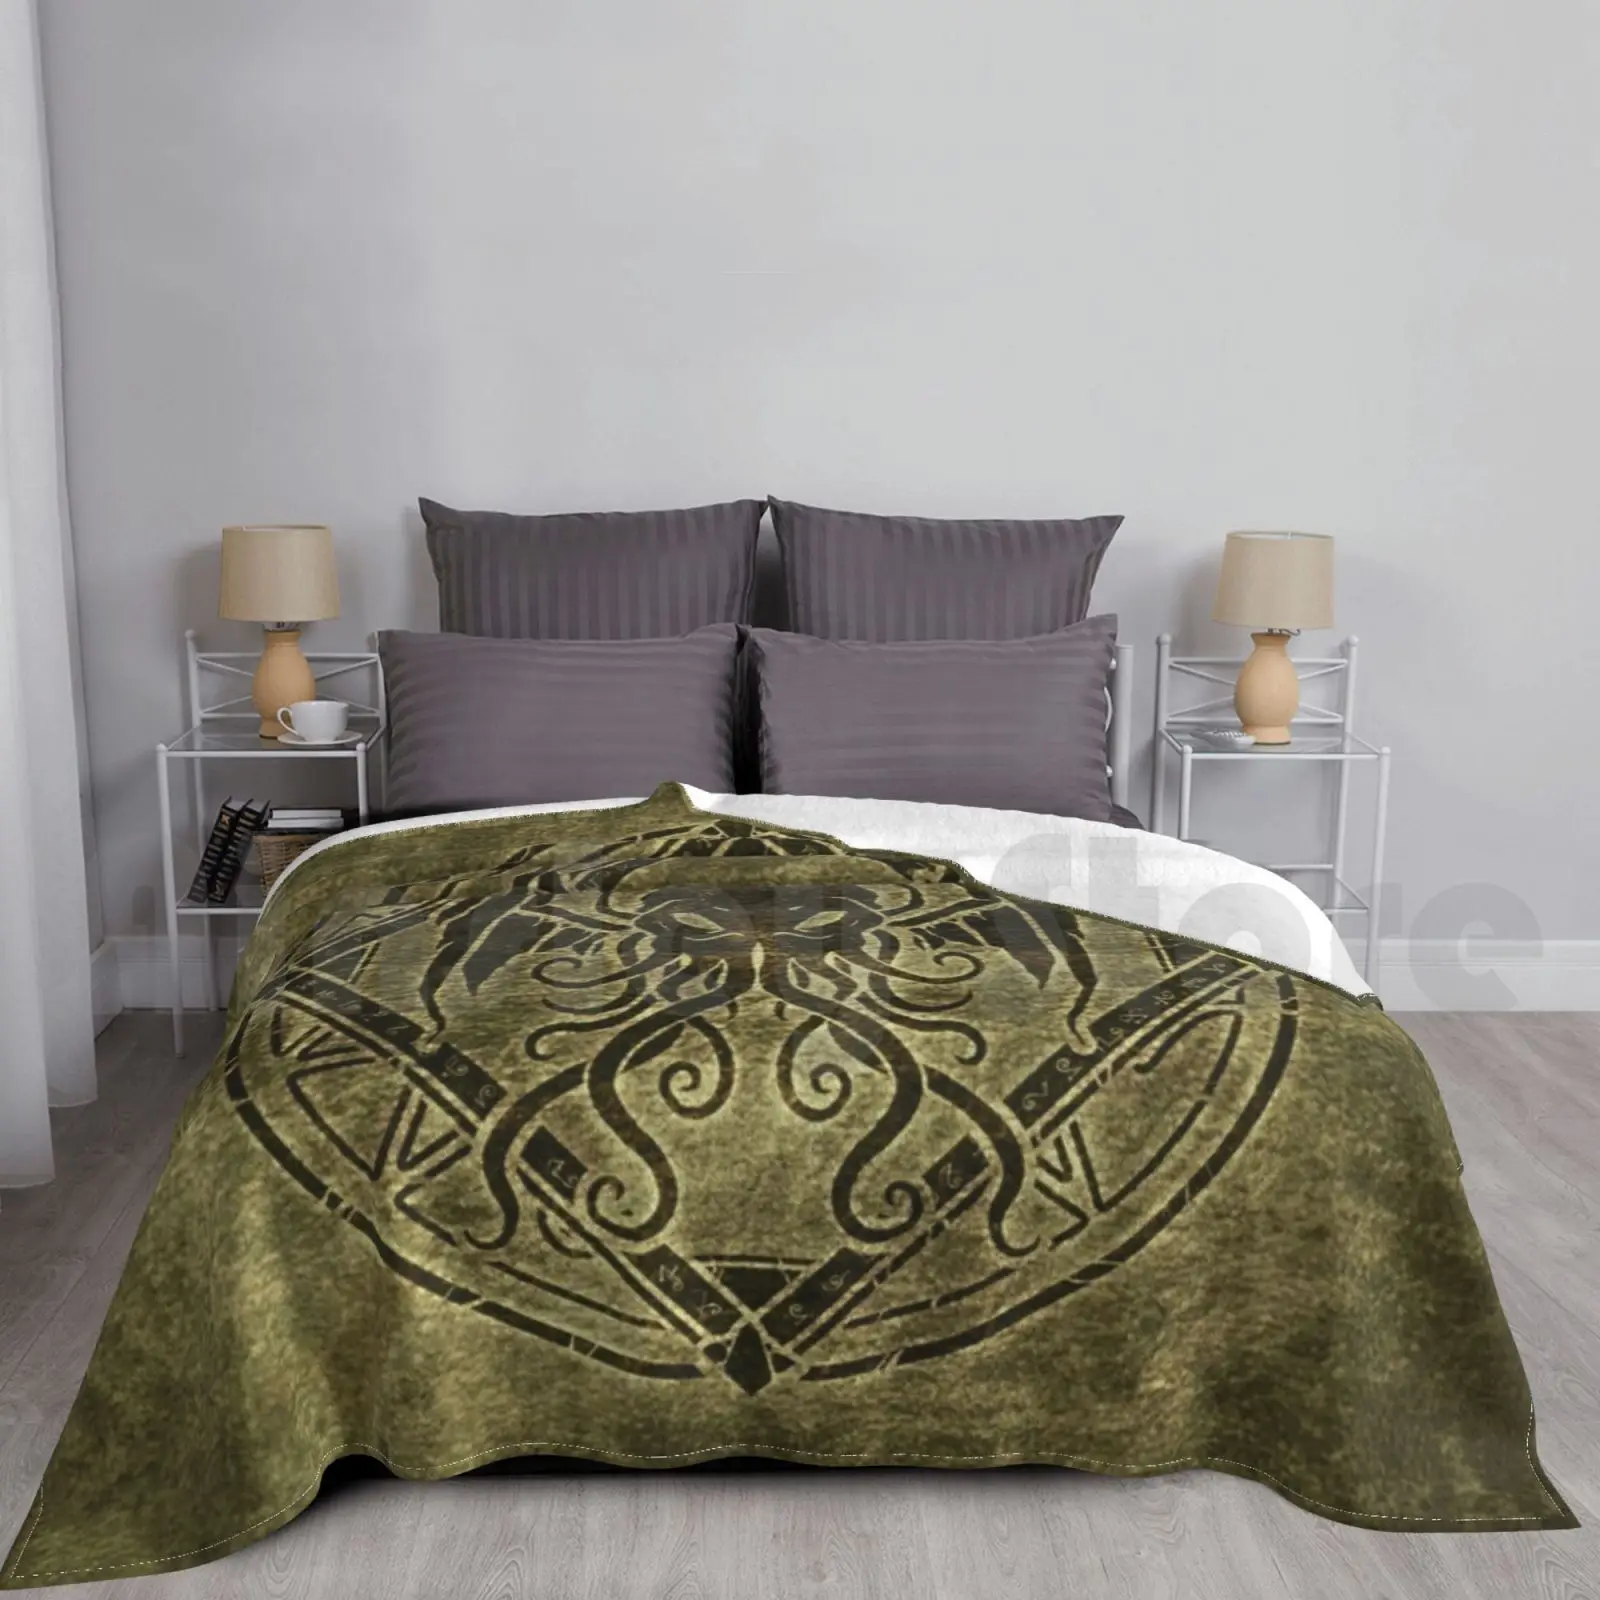 

Cthulhu дизайн-старое искусство для дивана-кровати путешествия Cthulhu эльдрич ужас Темный старый Бог тентесламы для пожилых